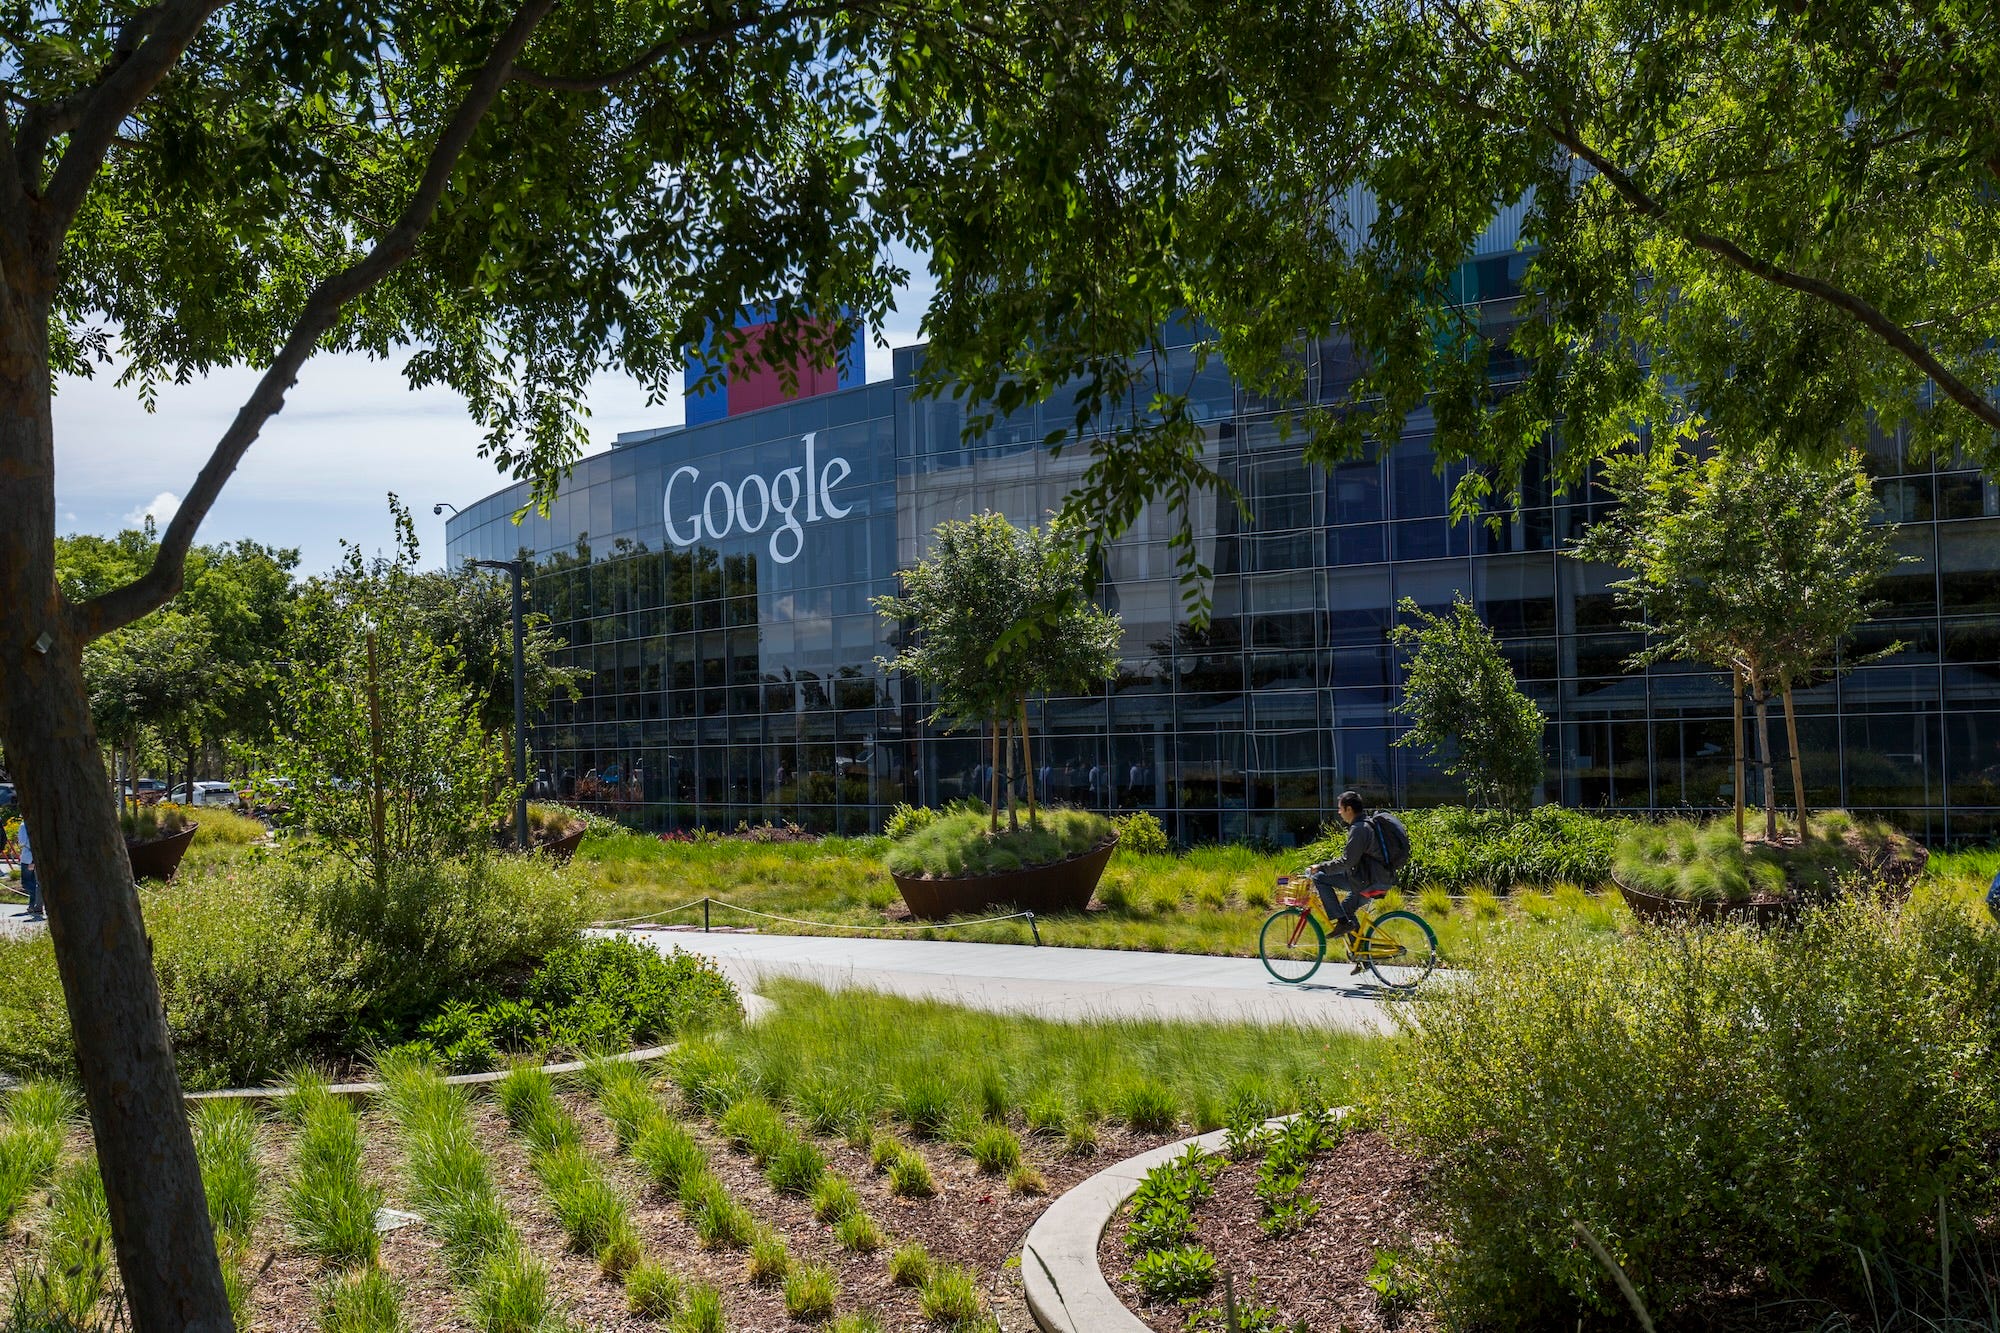 Ein Google-Mitarbeiter fährt mit dem Fahrrad vor dem Googleplex, dem Hauptsitz von Google in Mountain View, Kalifornien.